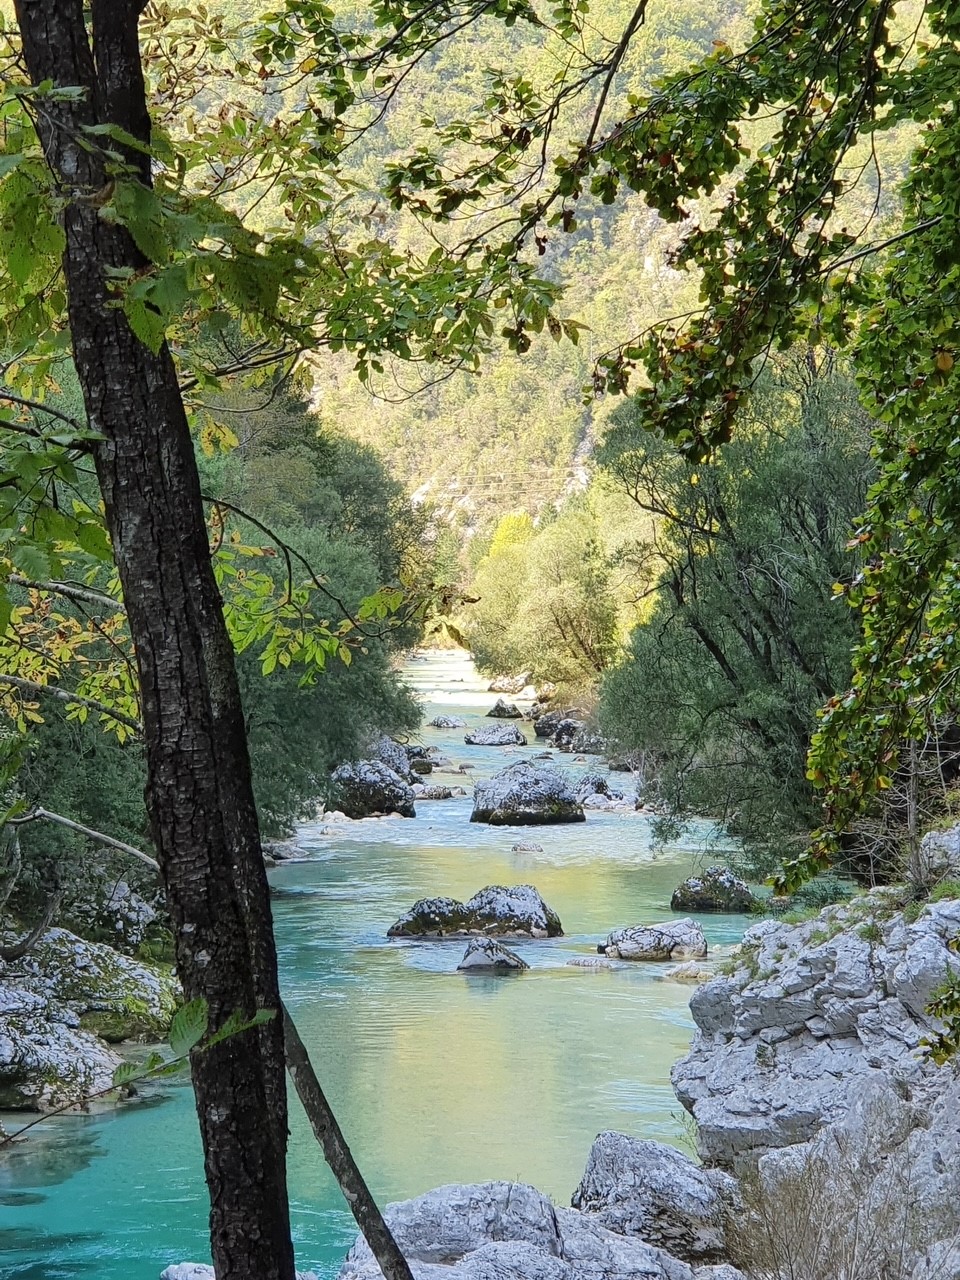 Soca Fluss in Slovenien im September 2020